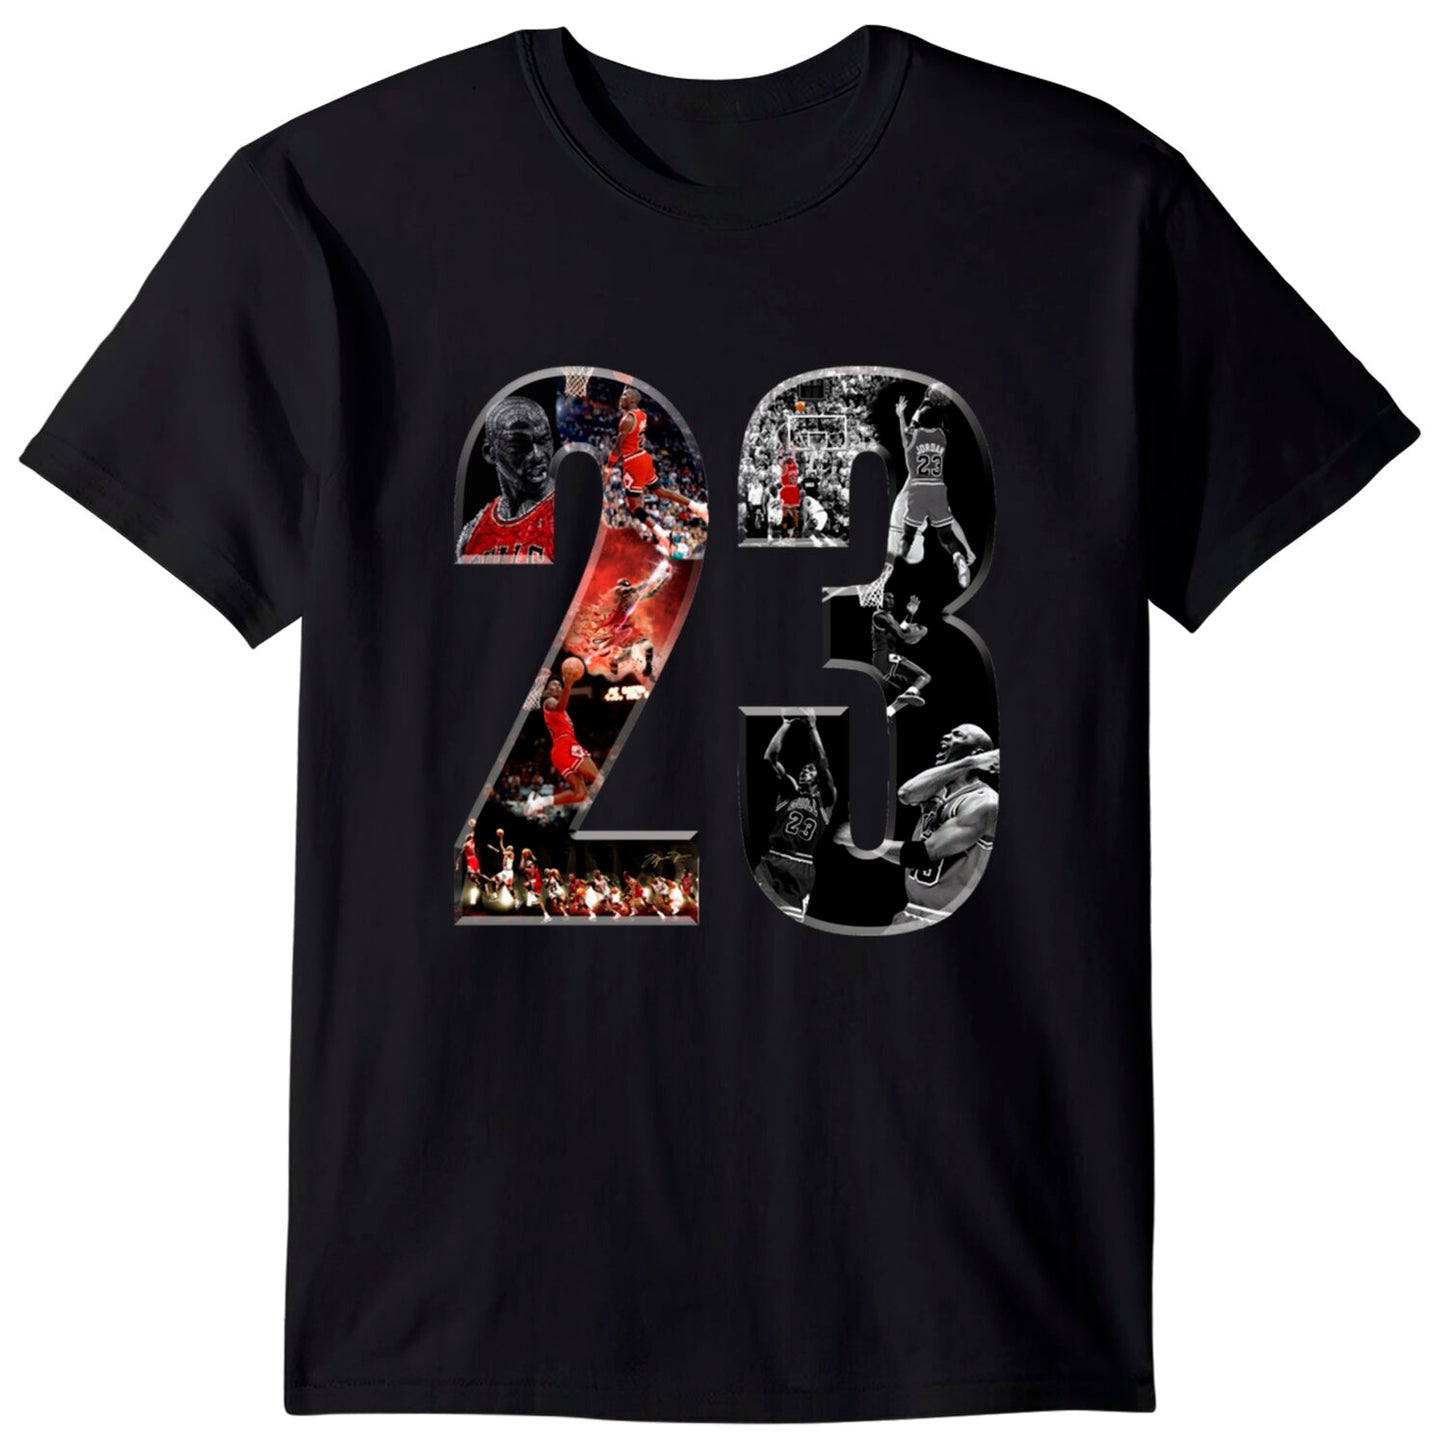 Jordan 23 T-Shirt